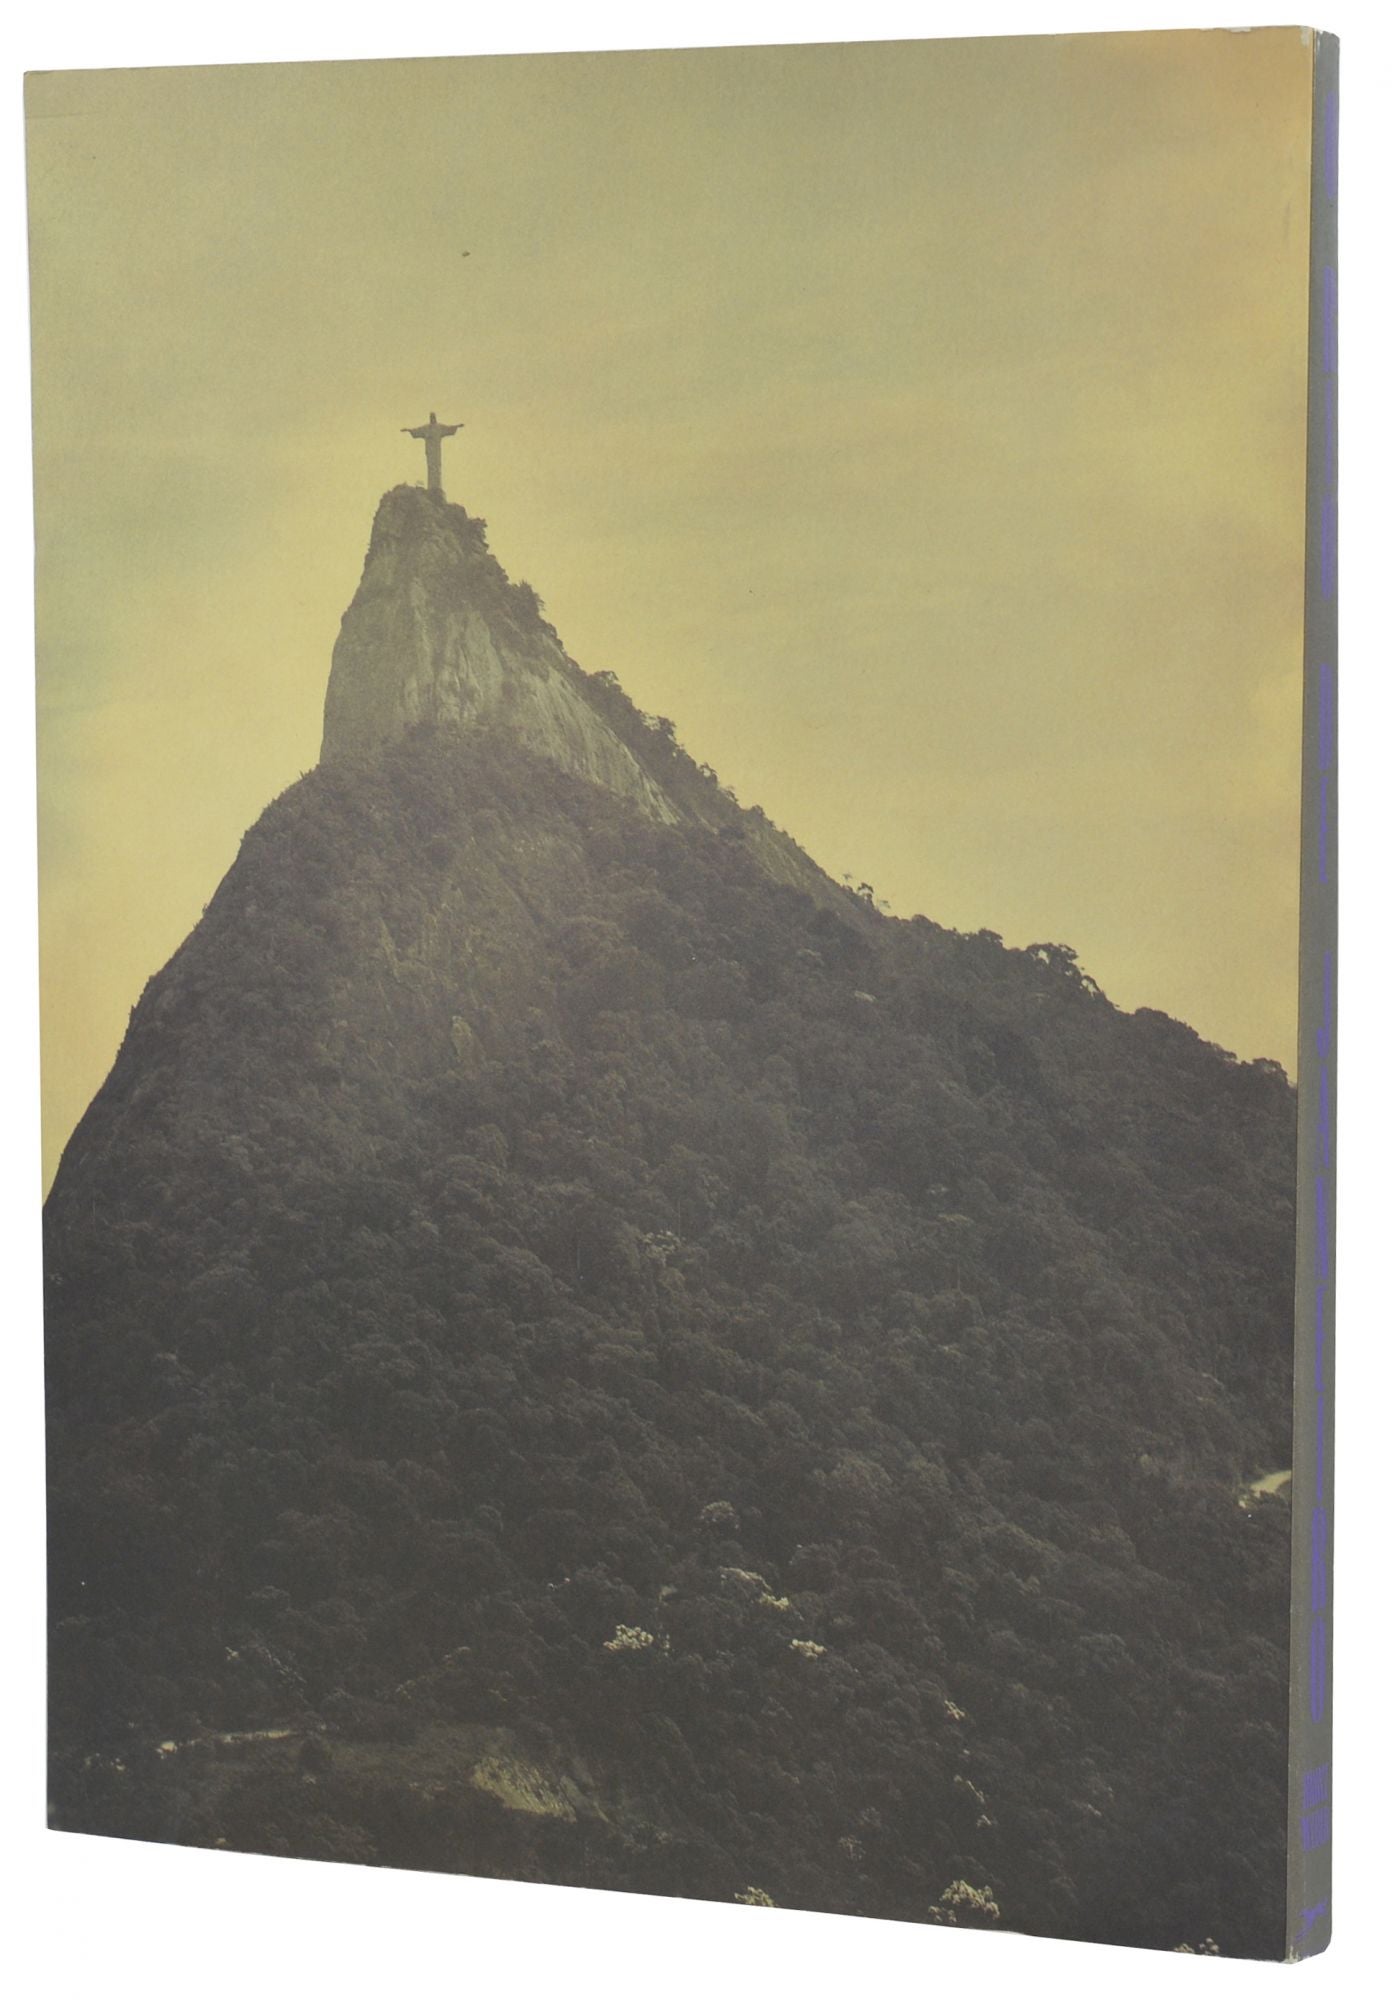 O Rio de Janeiro by Bruce Weber on Burnside Rare Books